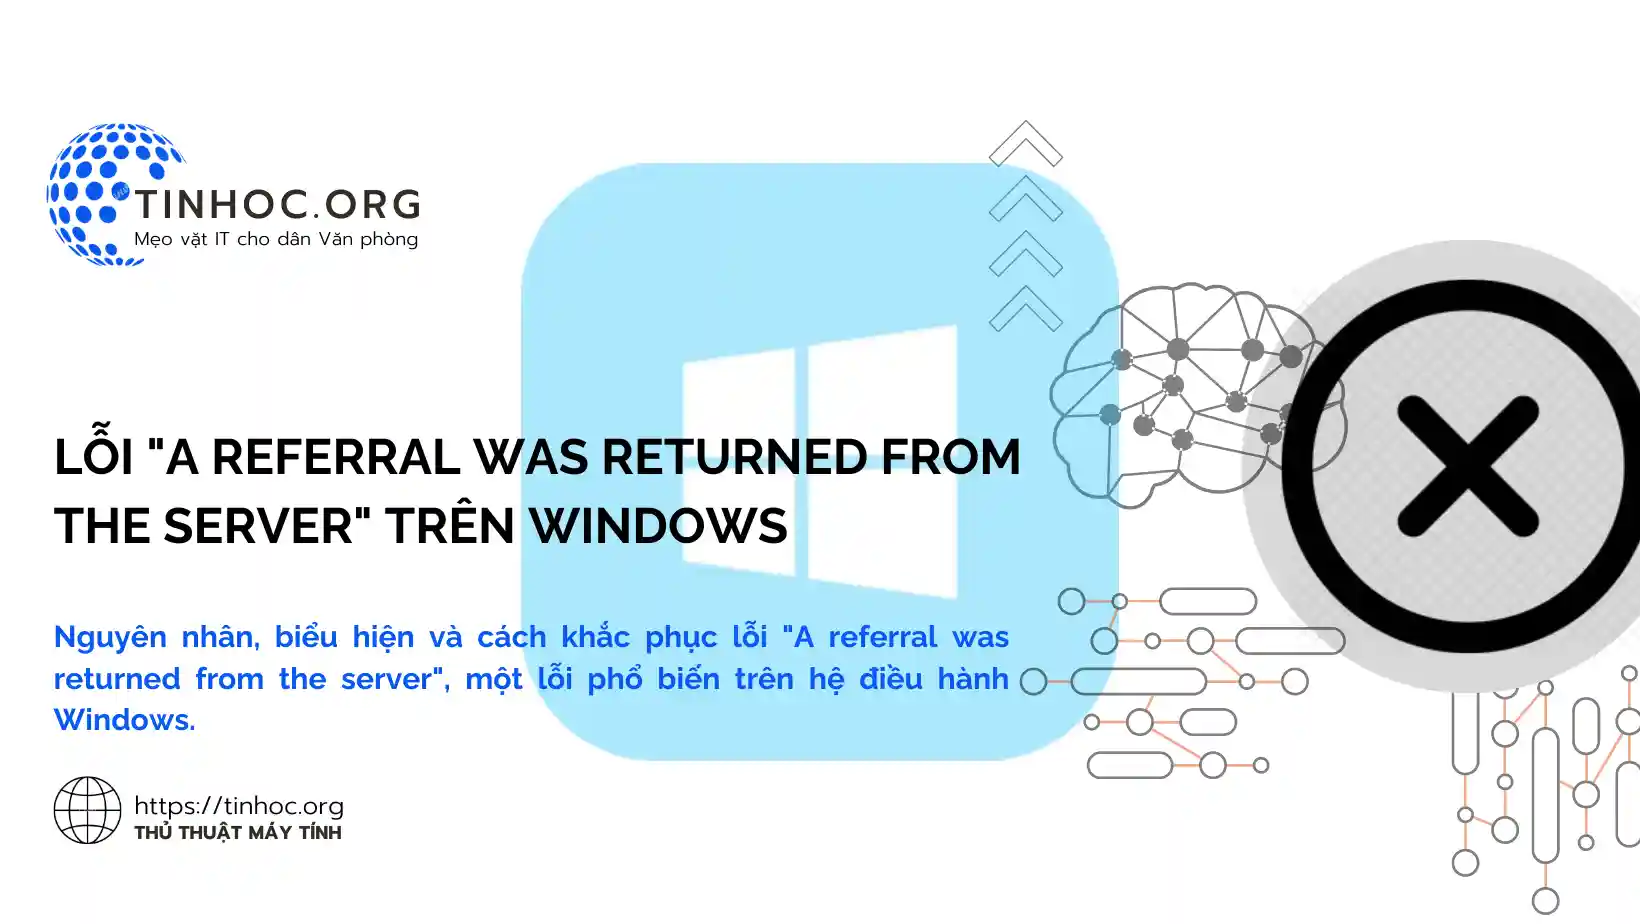 Nguyên nhân, biểu hiện và cách khắc phục lỗi "A referral was returned from the server", một lỗi phổ biến trên hệ điều hành Windows.